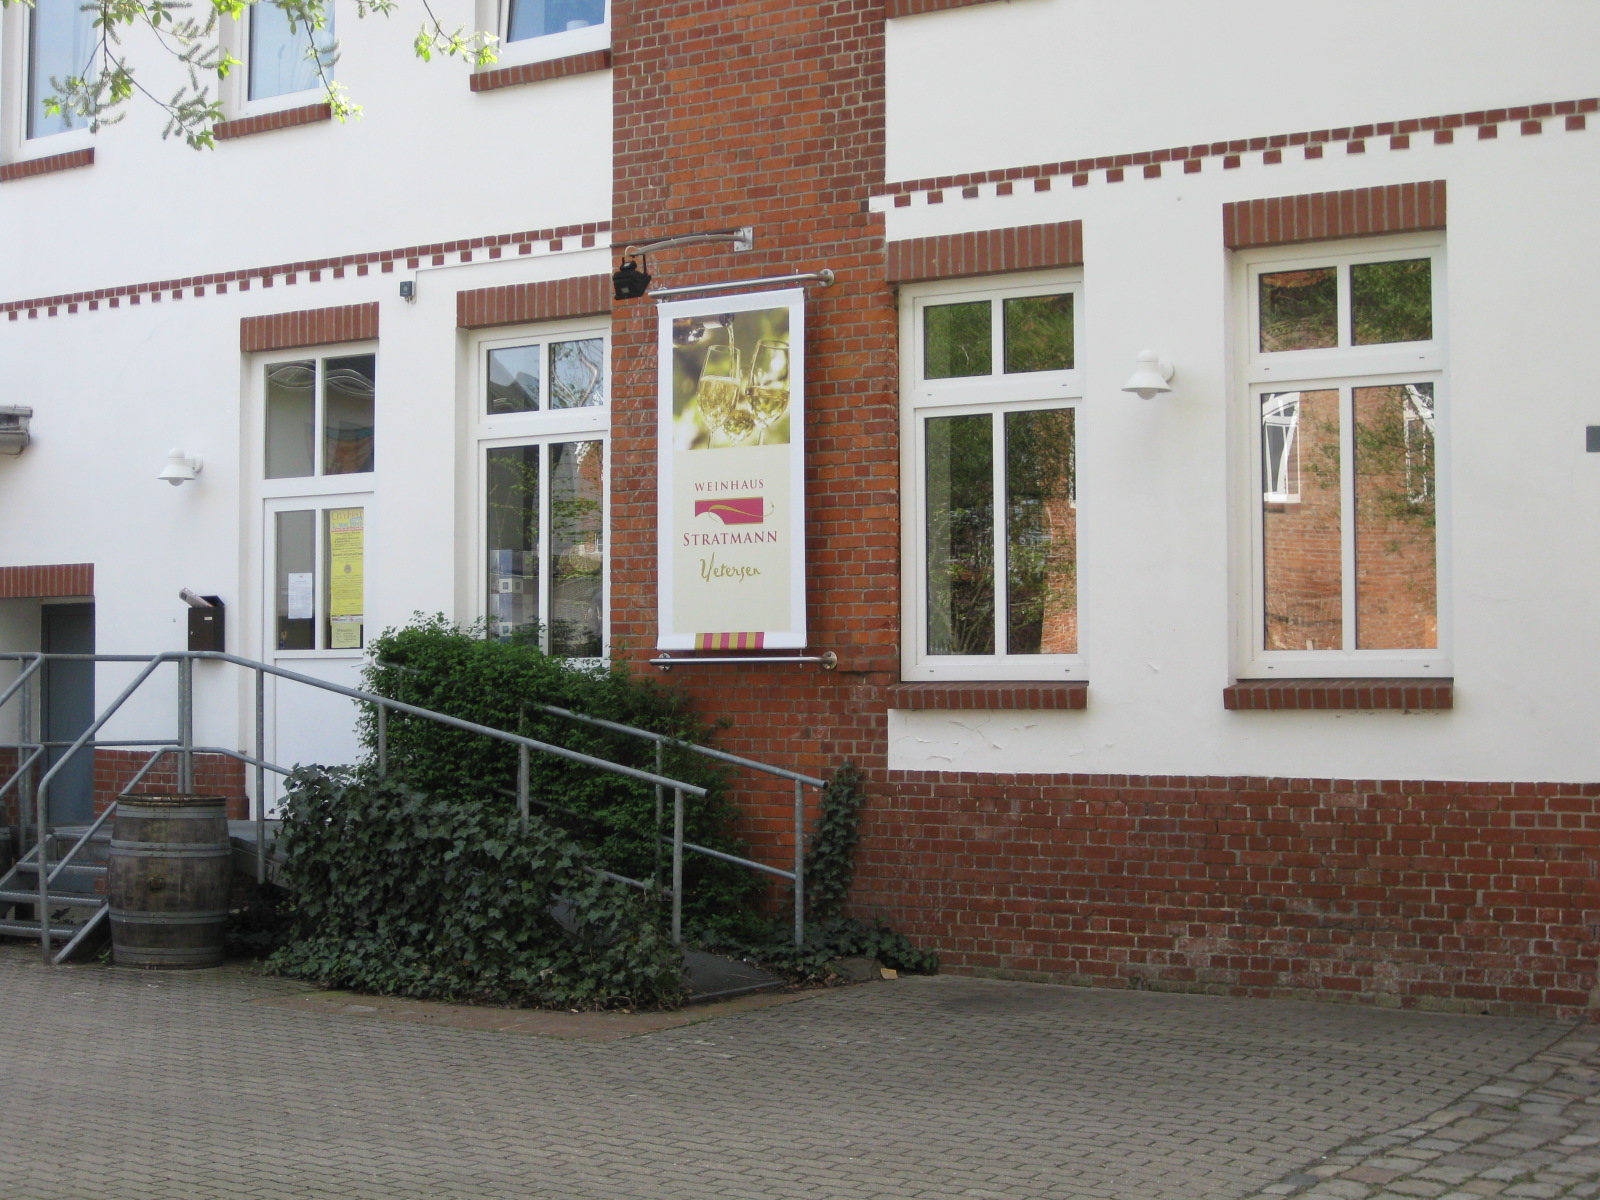 Bild 1 Weinhaus Stratmann GmbH in Uetersen